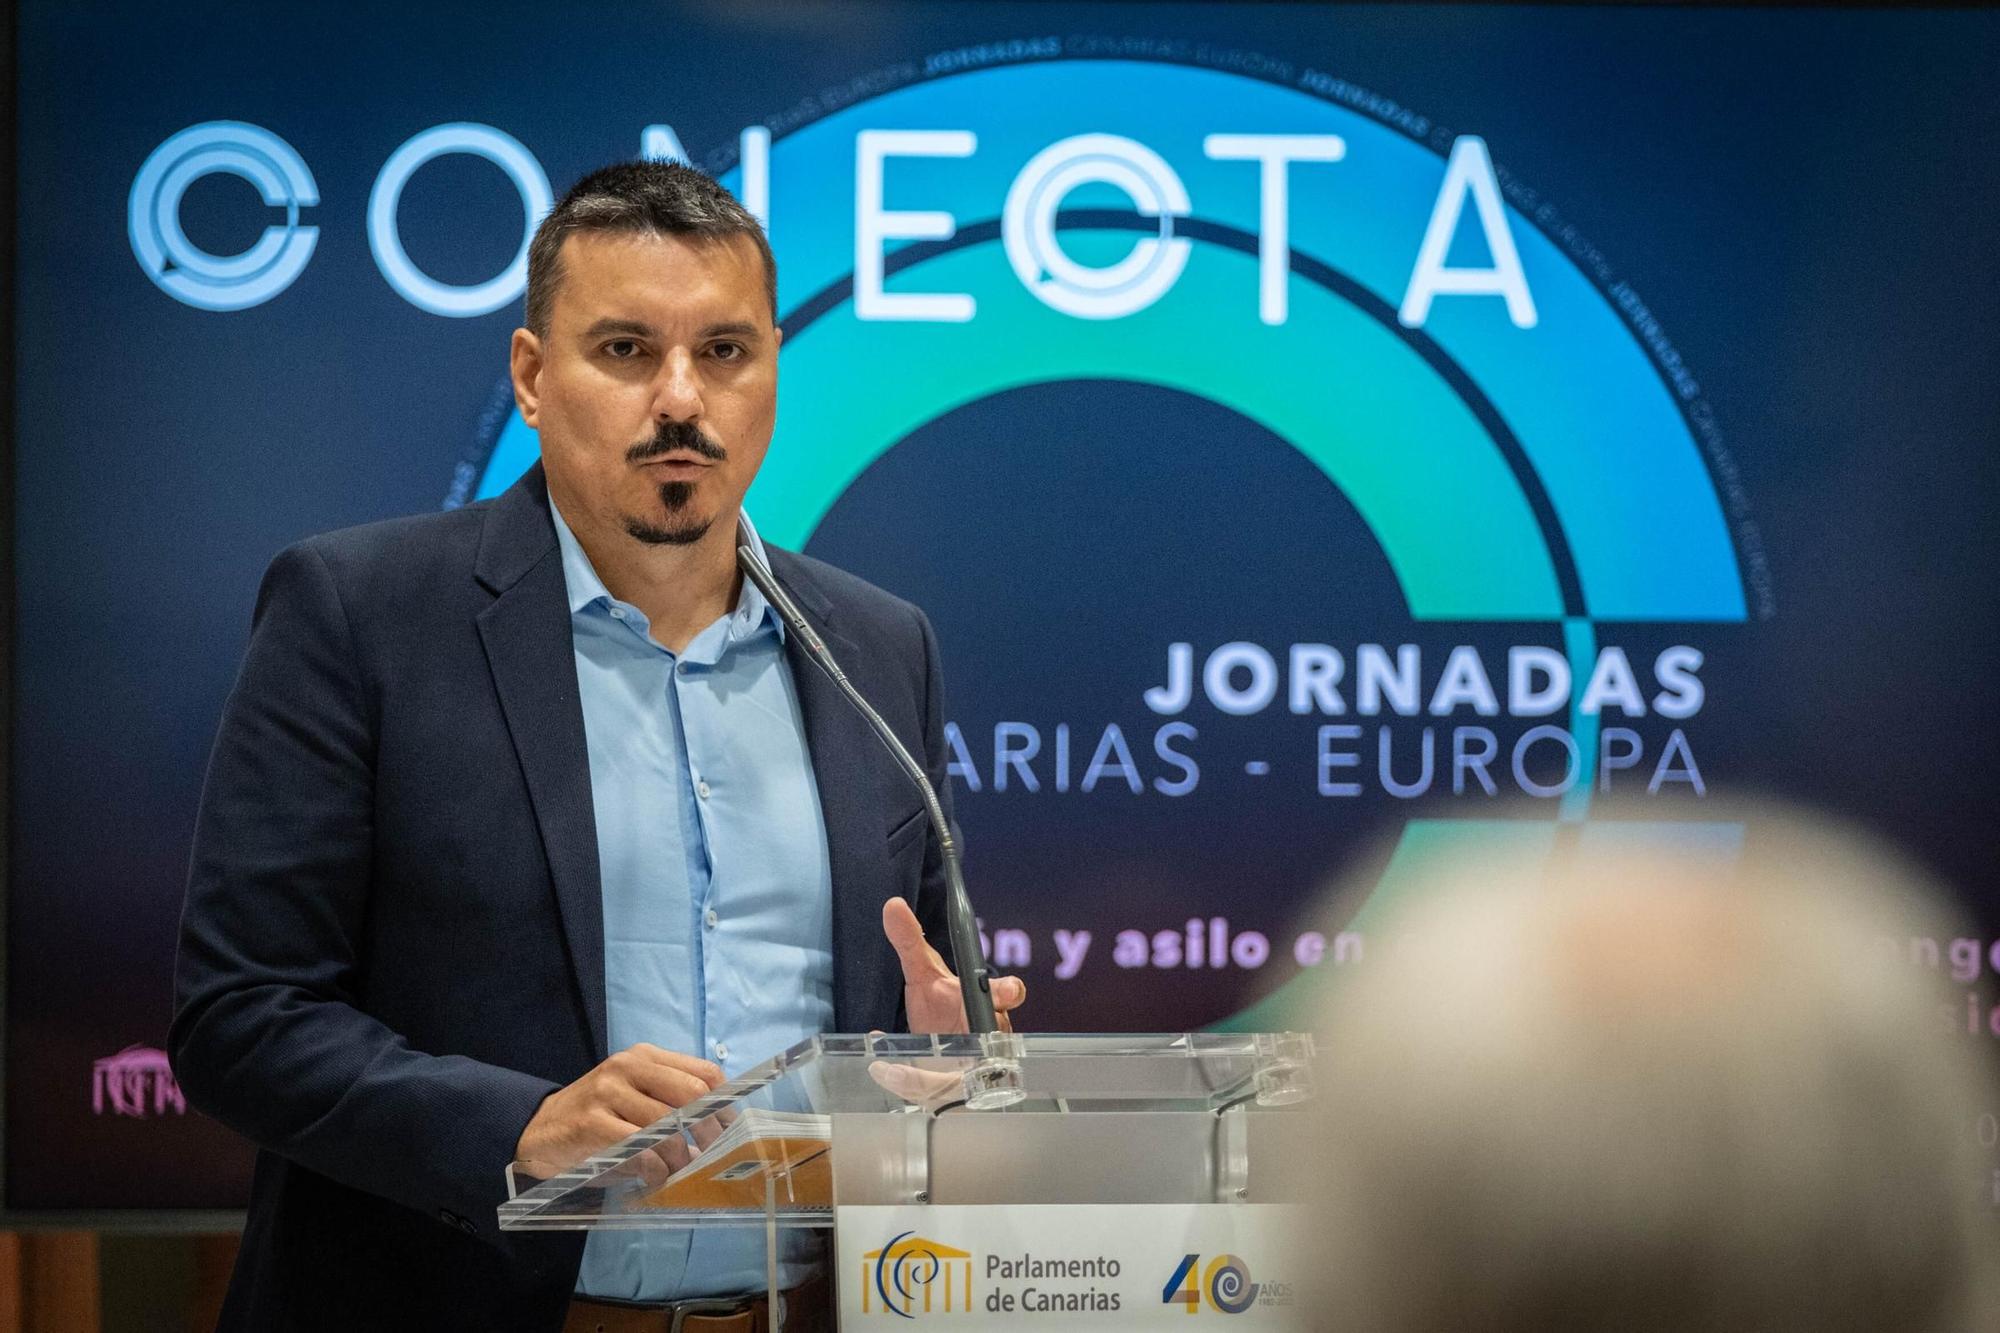 Jornadas Conecta Canarias-Europa